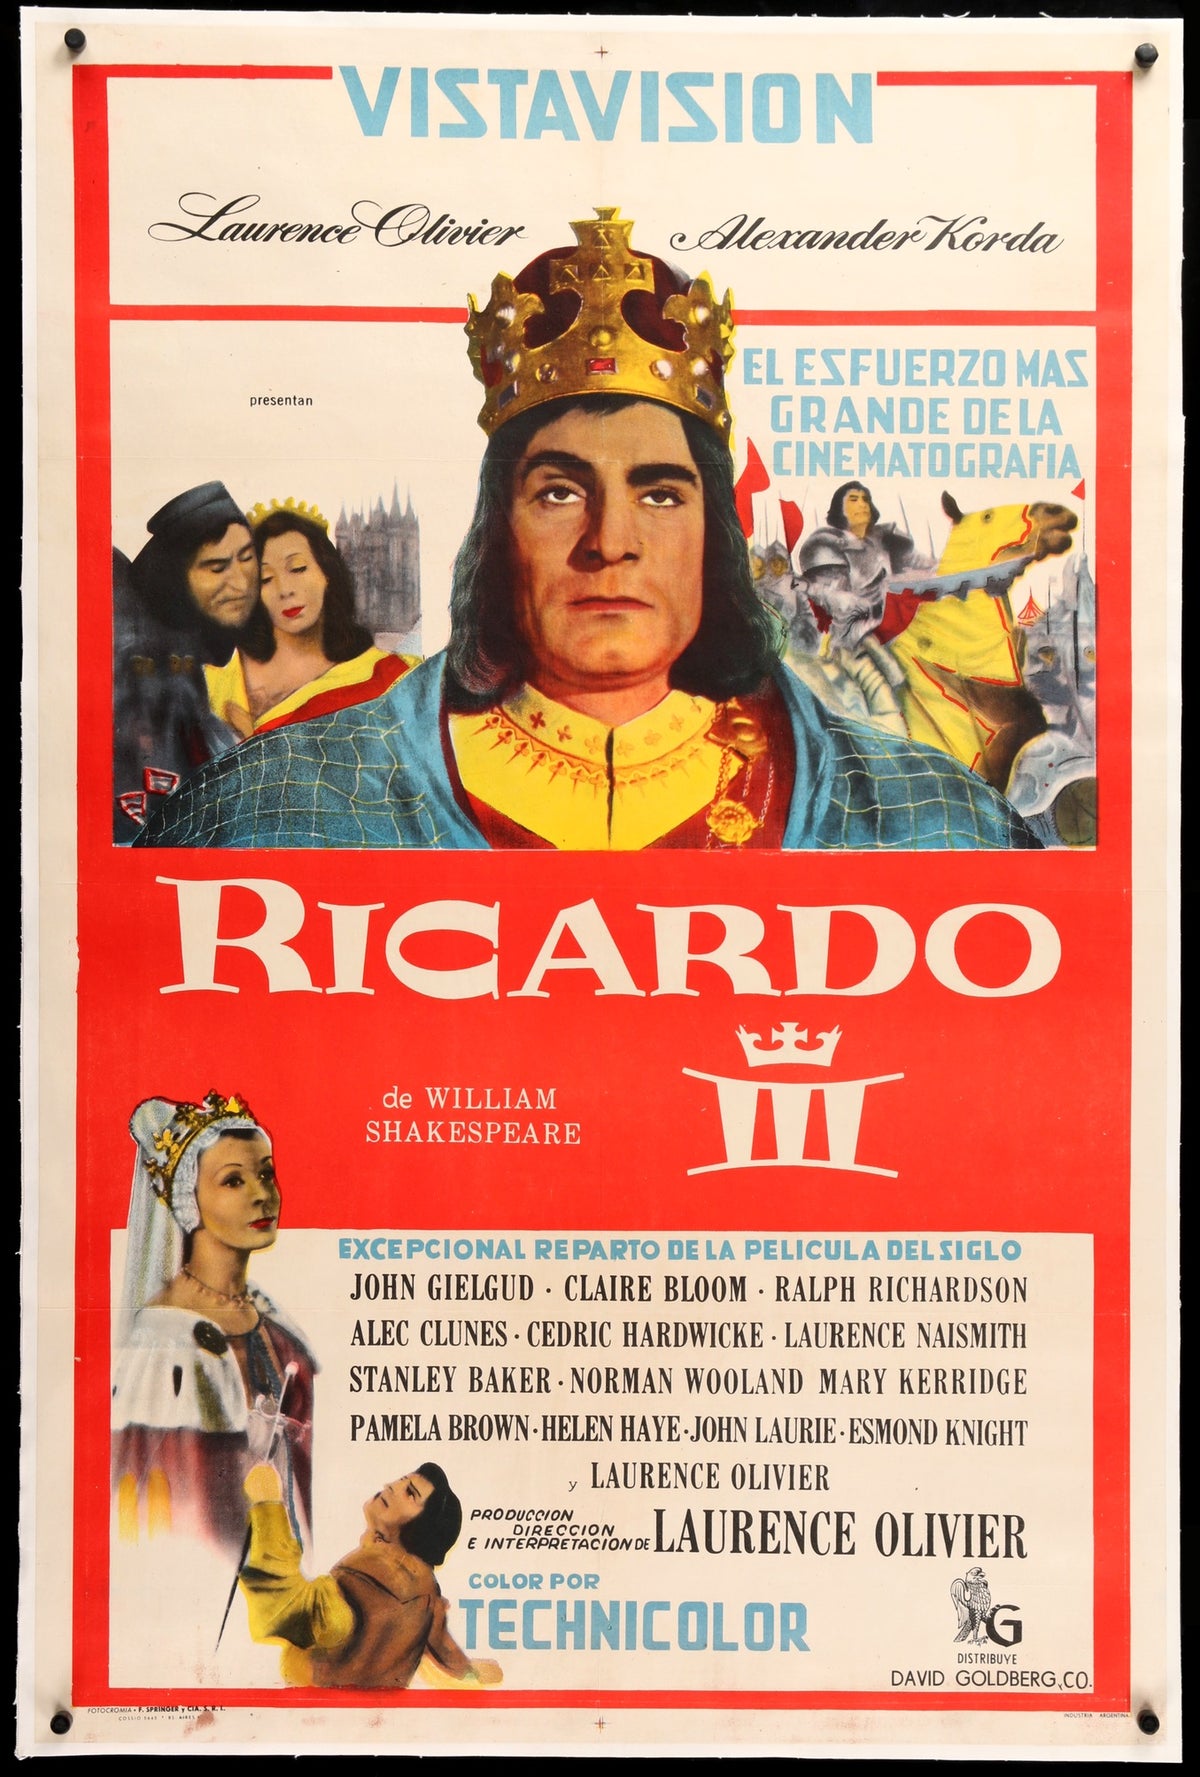 richard iii shakespeare poster